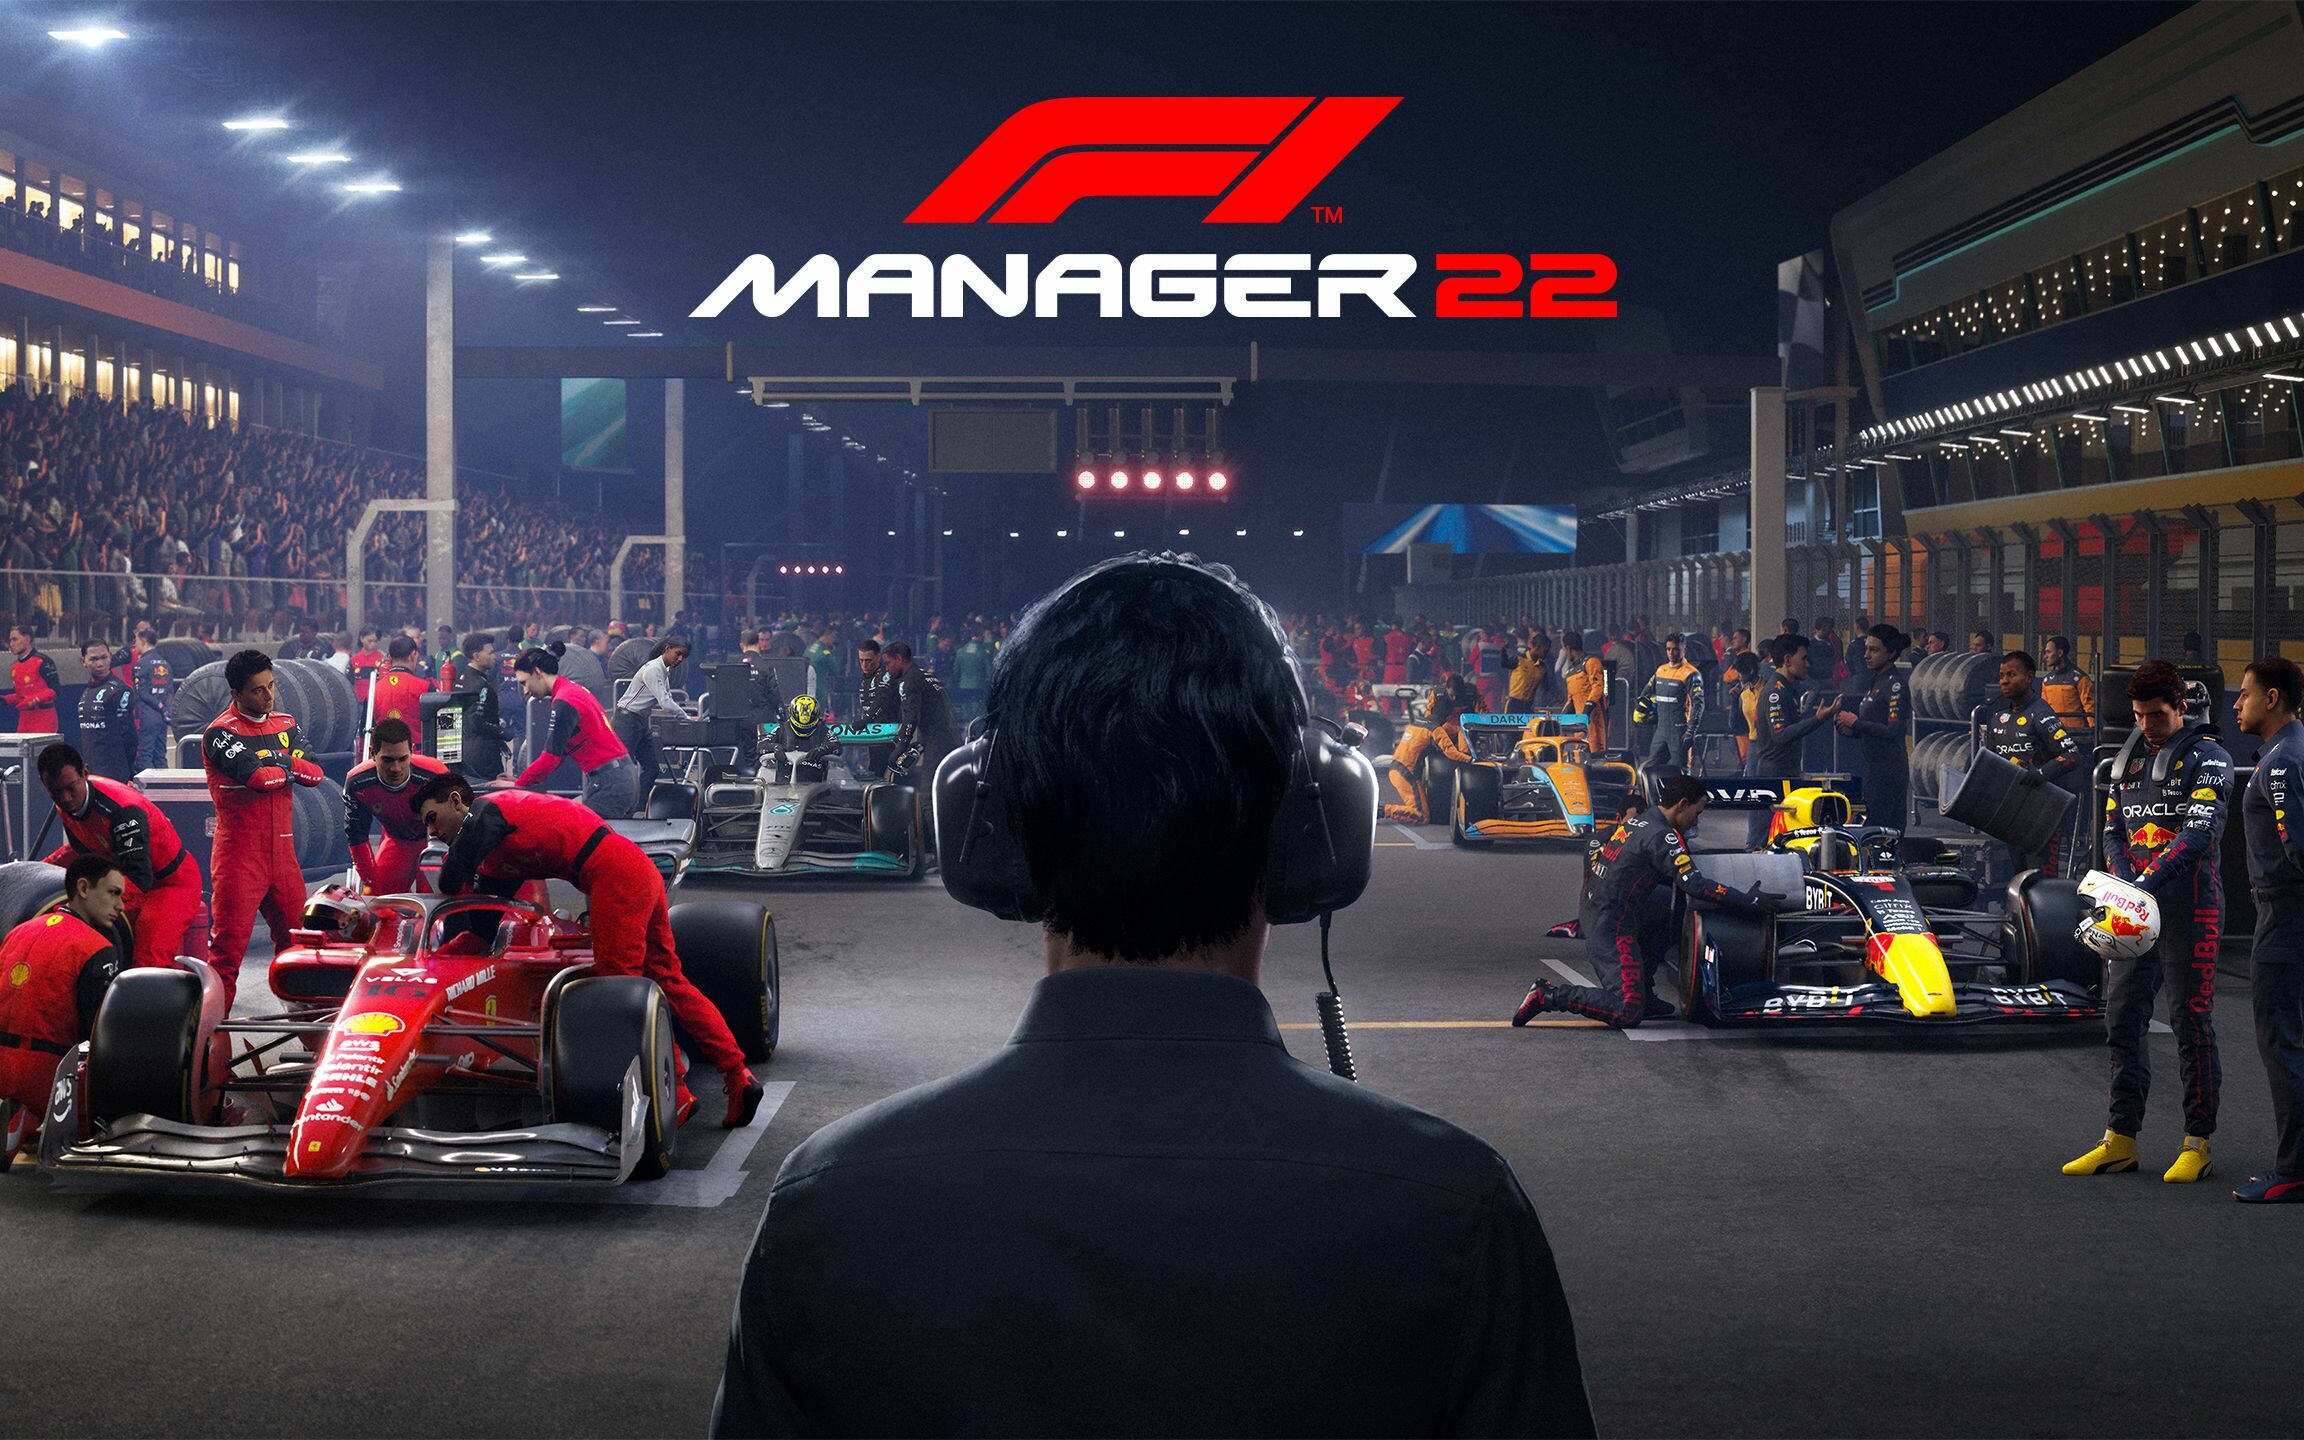 F1 manager 2022 poradnik